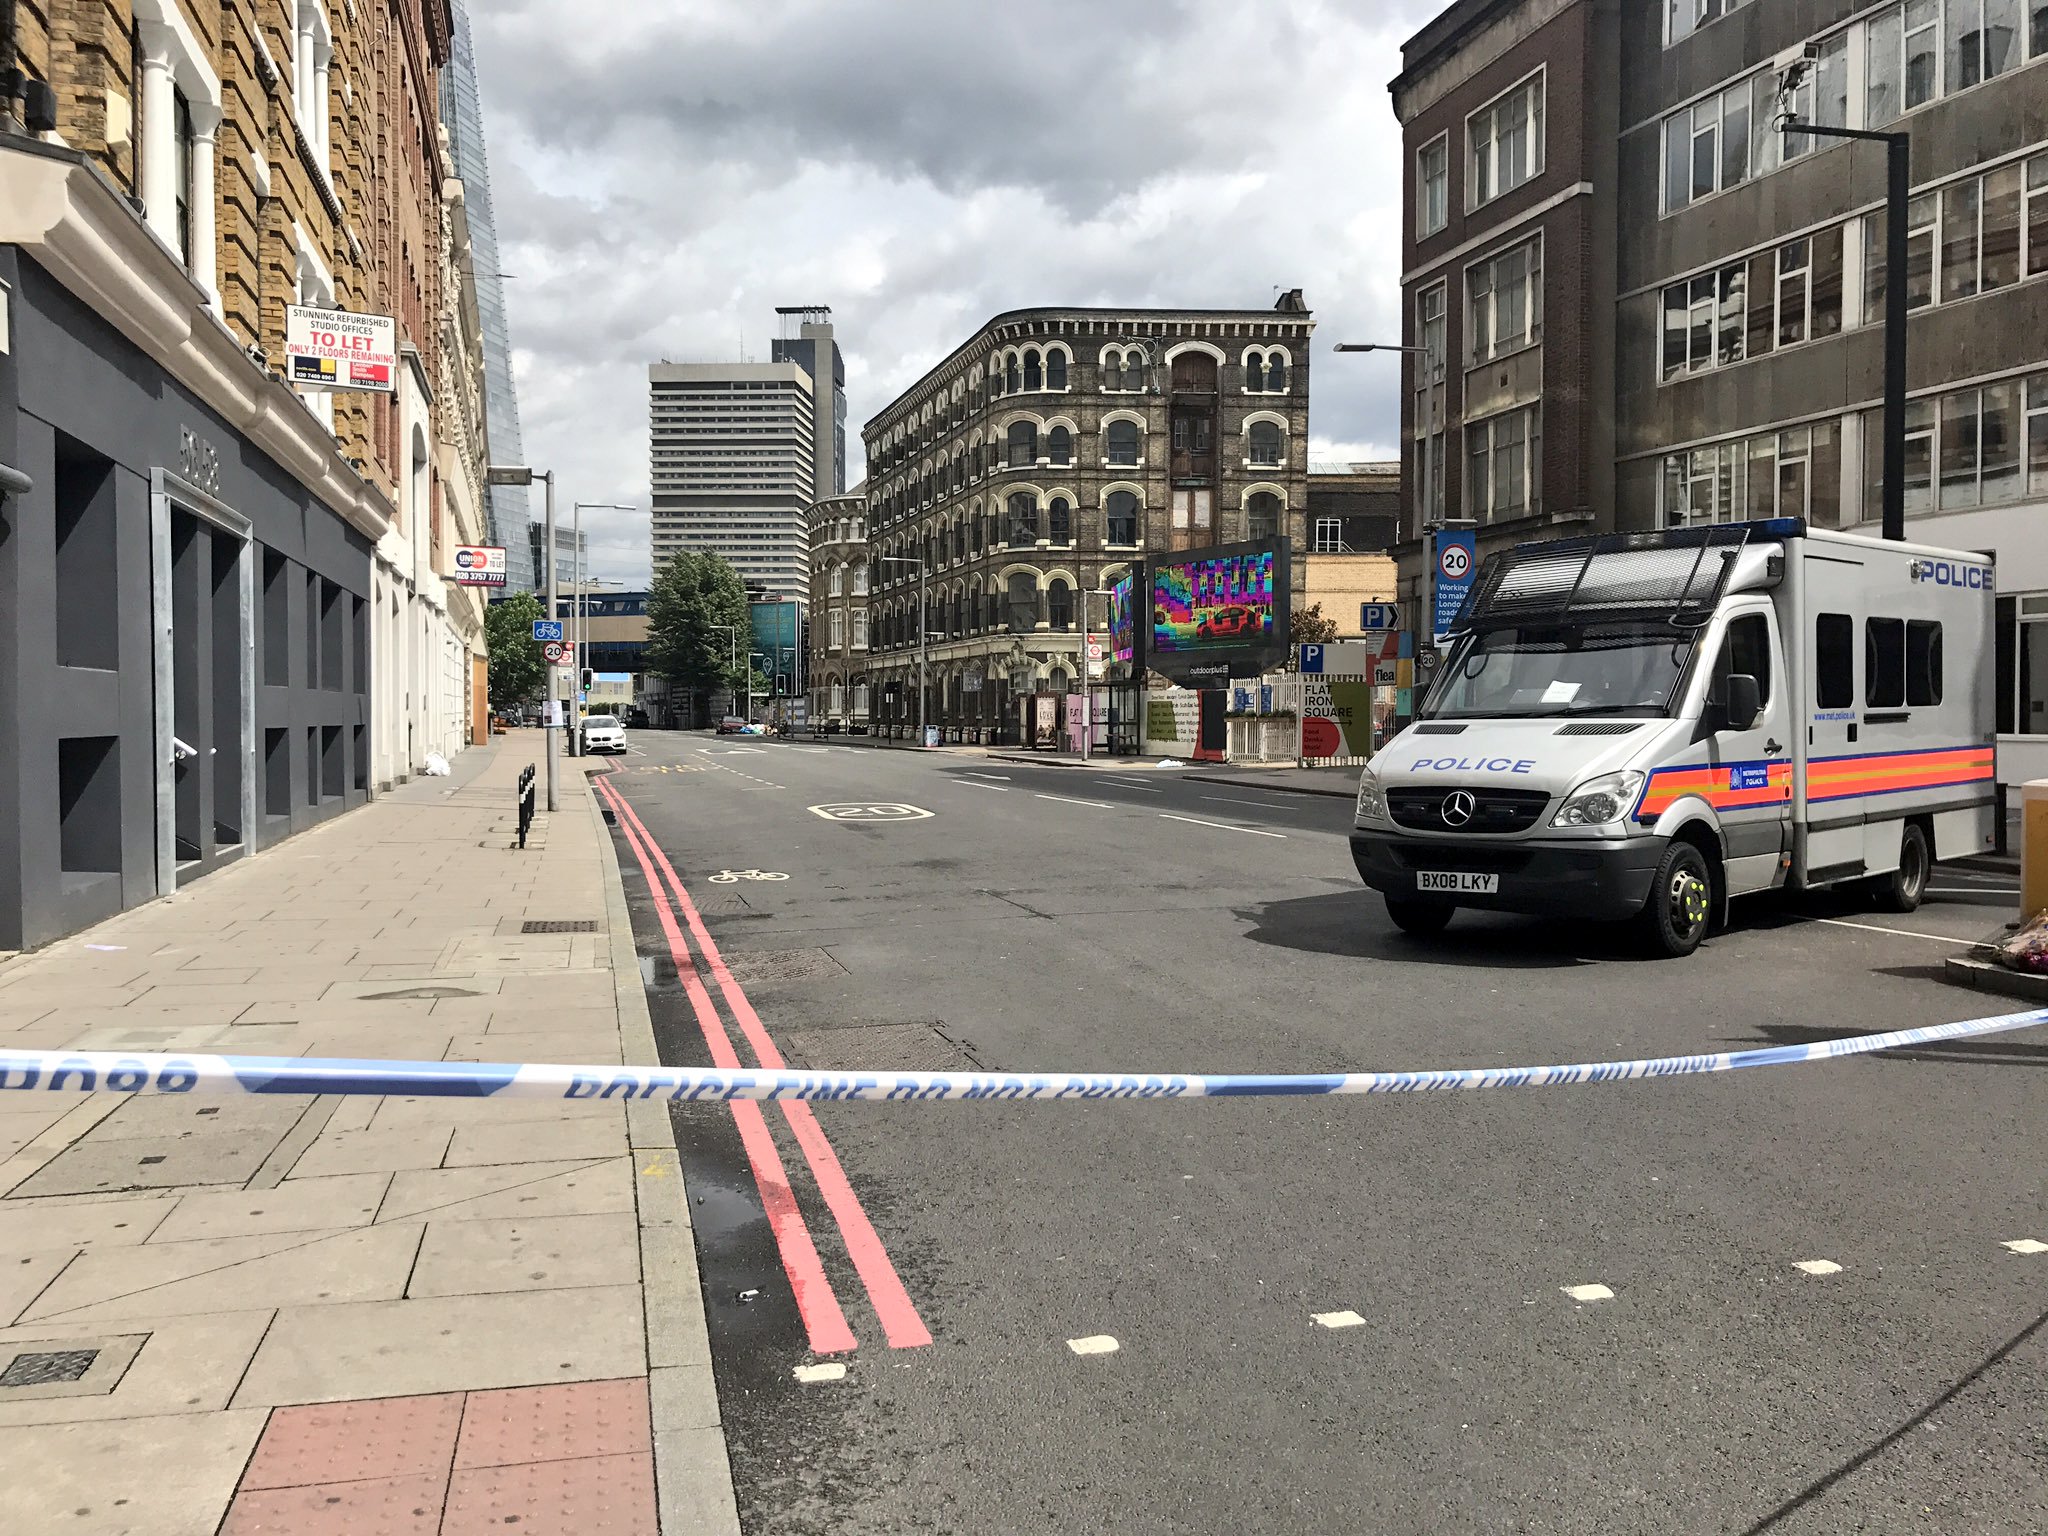 London Bridge terror attack cost police £10 million